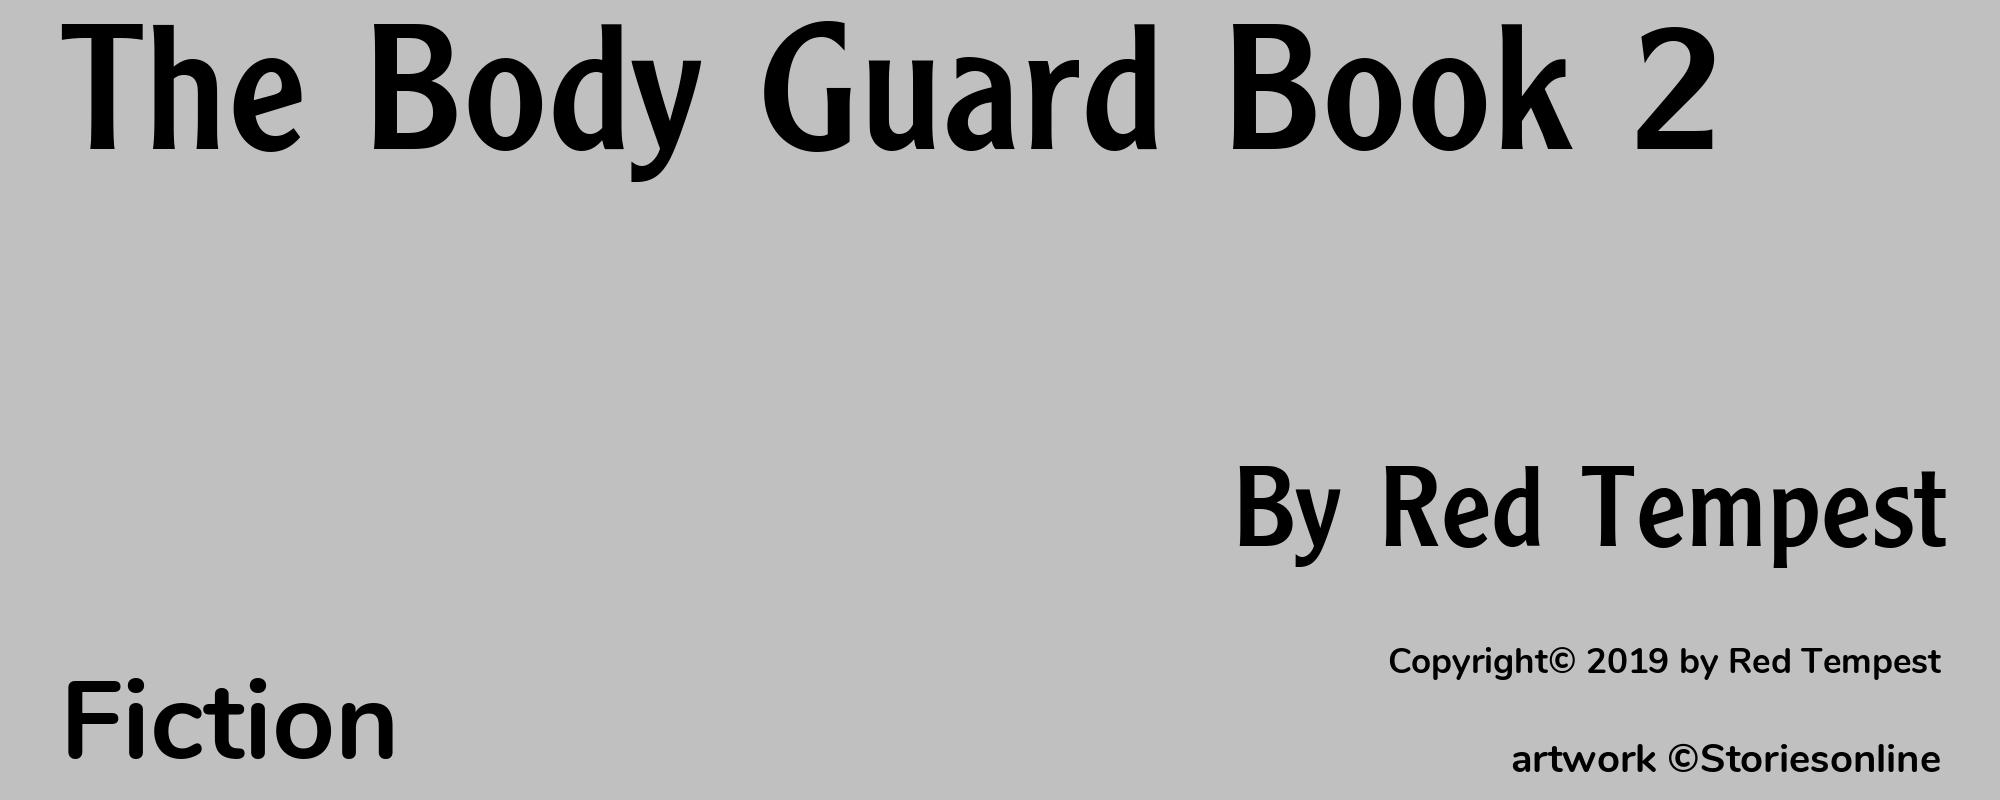 The Body Guard Book 2 - Cover